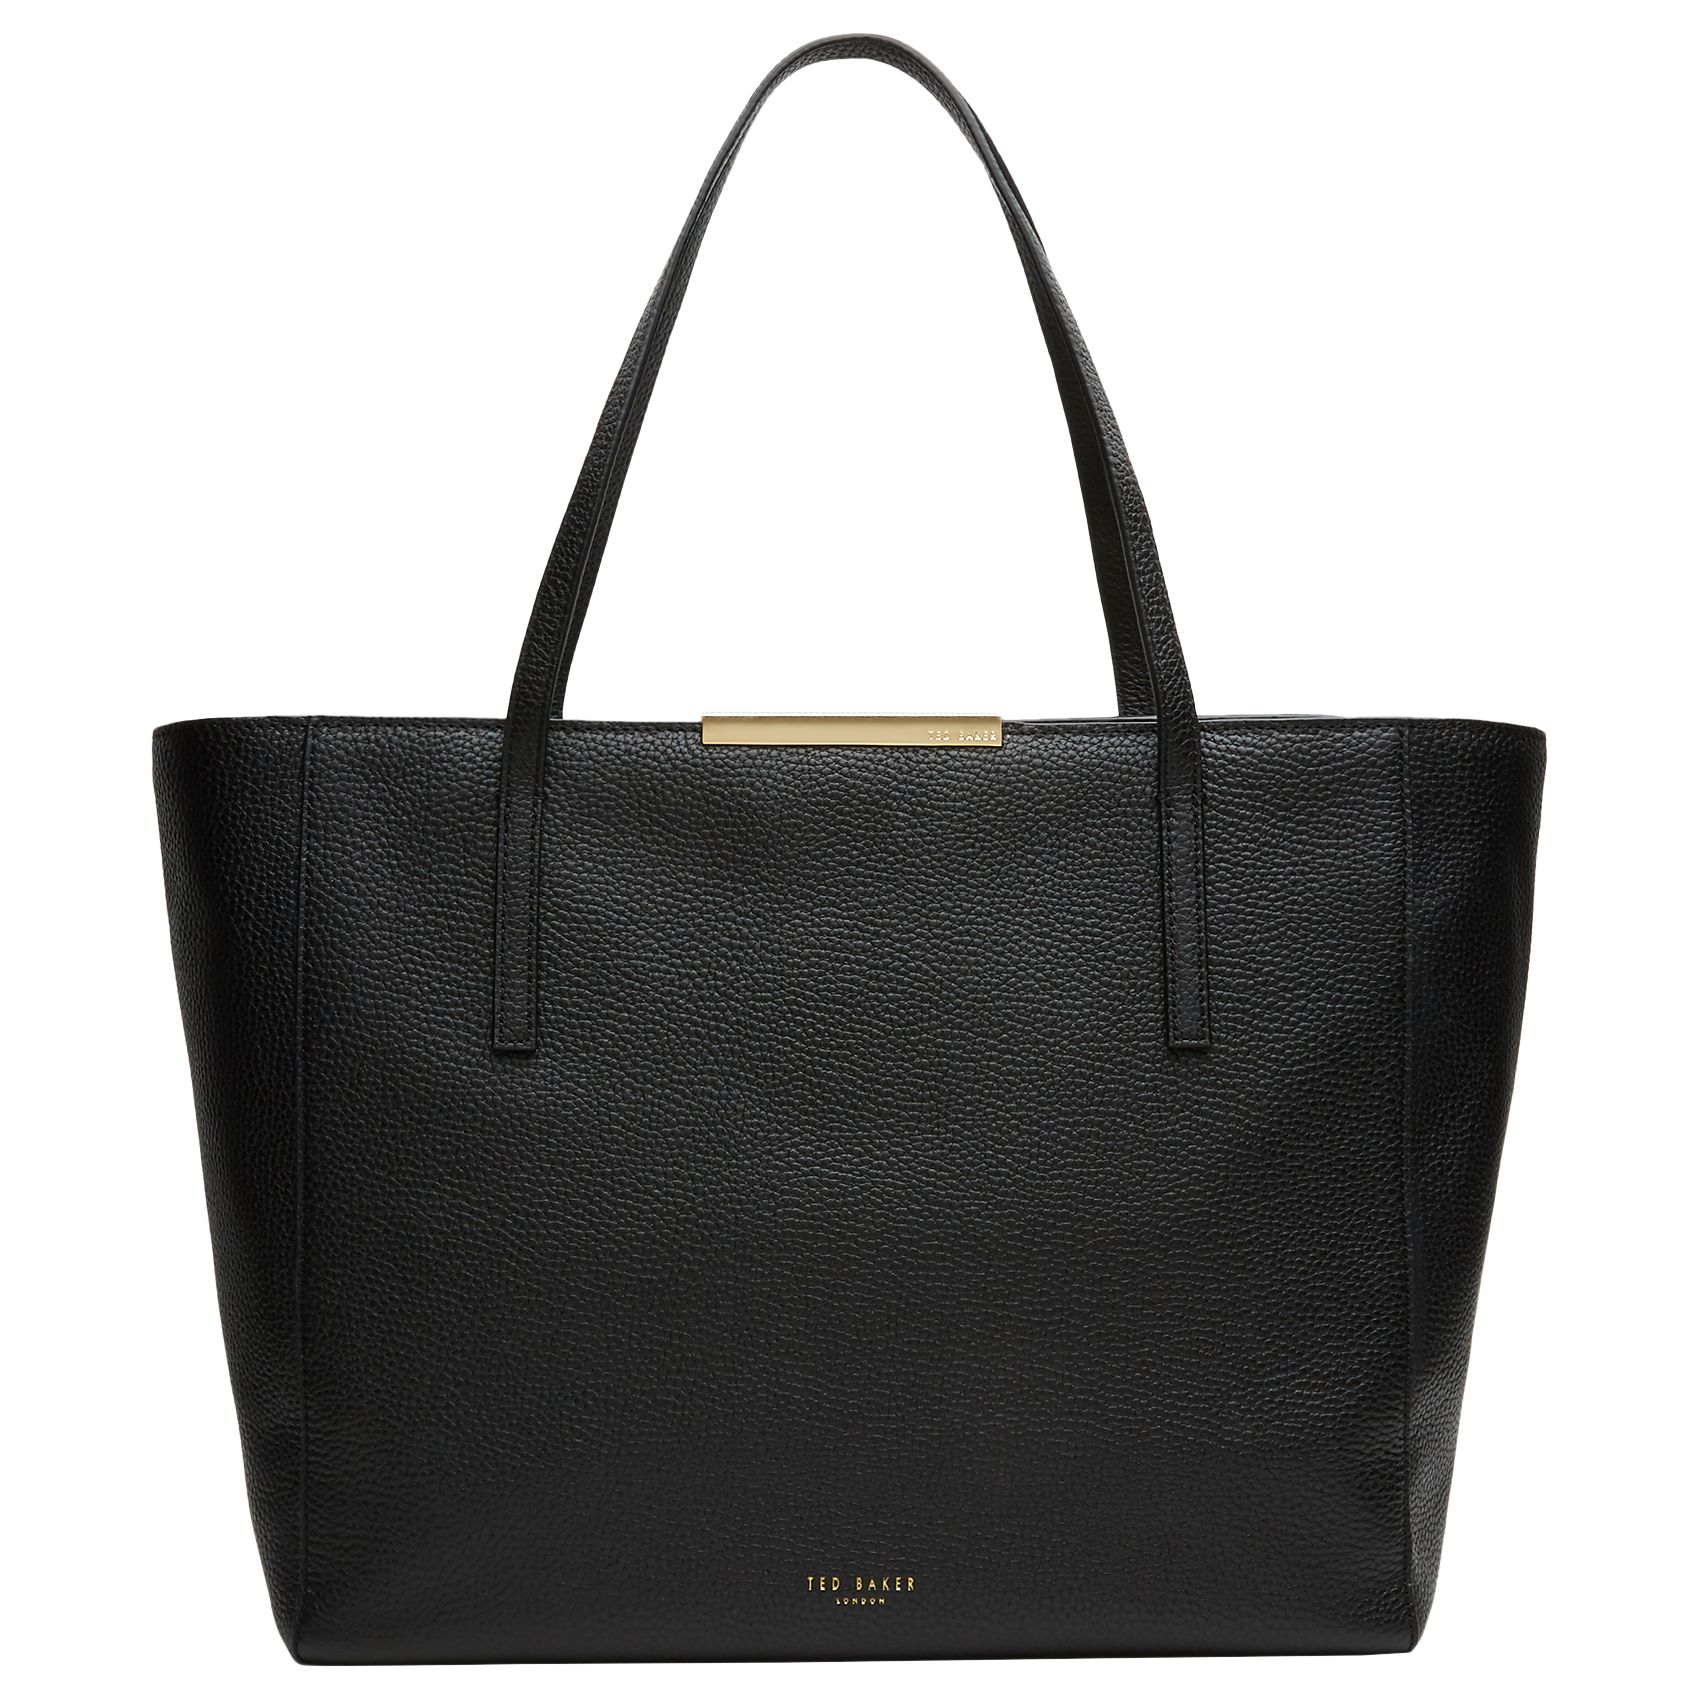 Ted Baker Rhonda Leather Large Shopper Bag, Black at John Lewis & Partners